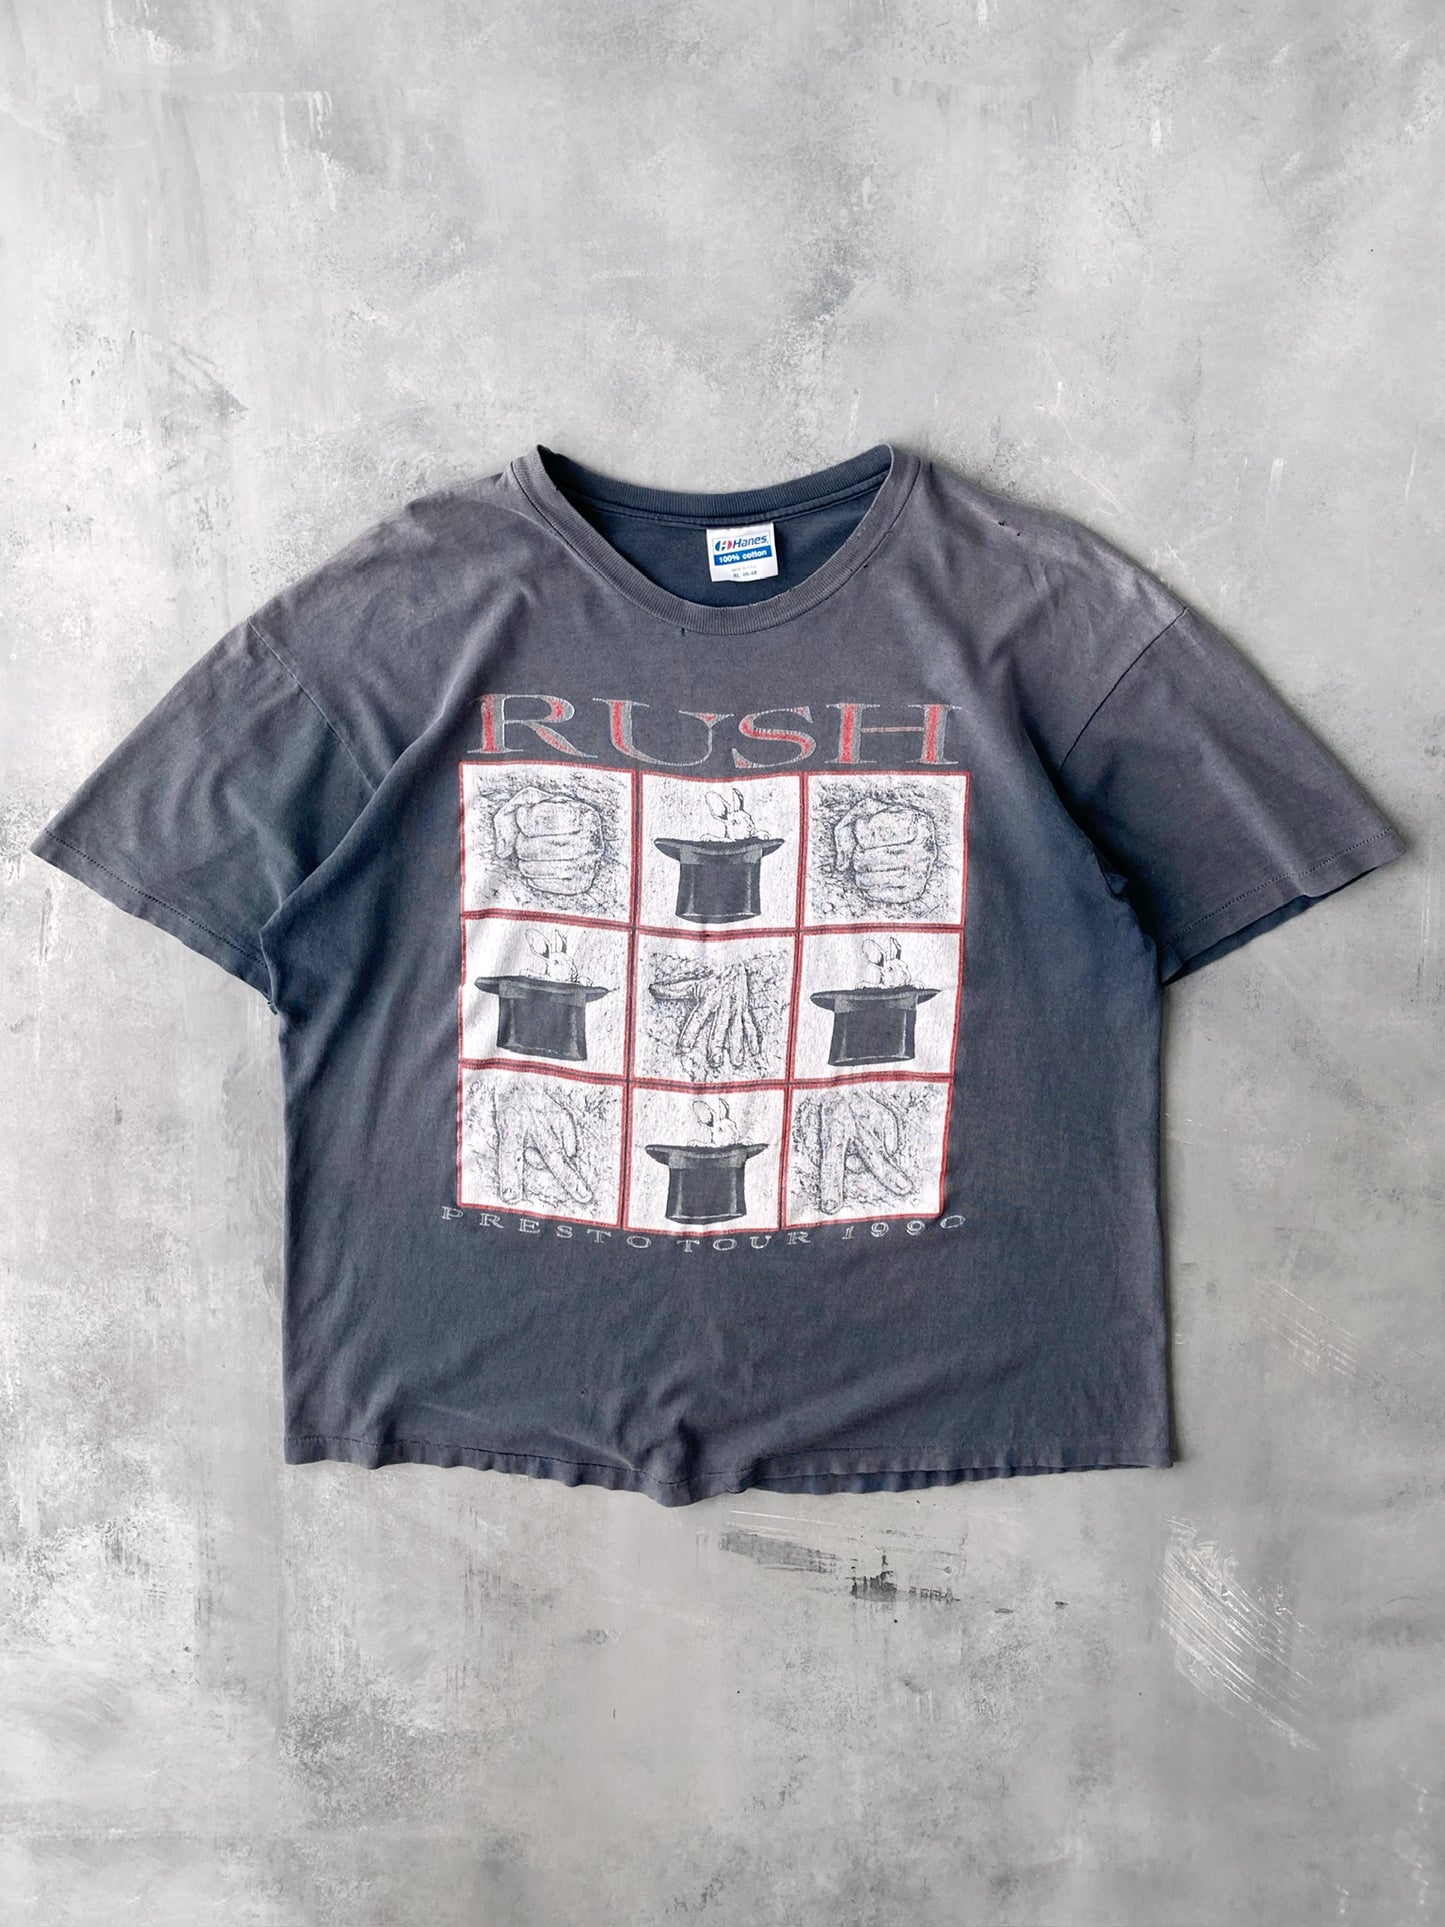 Rush Presto Tour T-Shirt '90 - XL